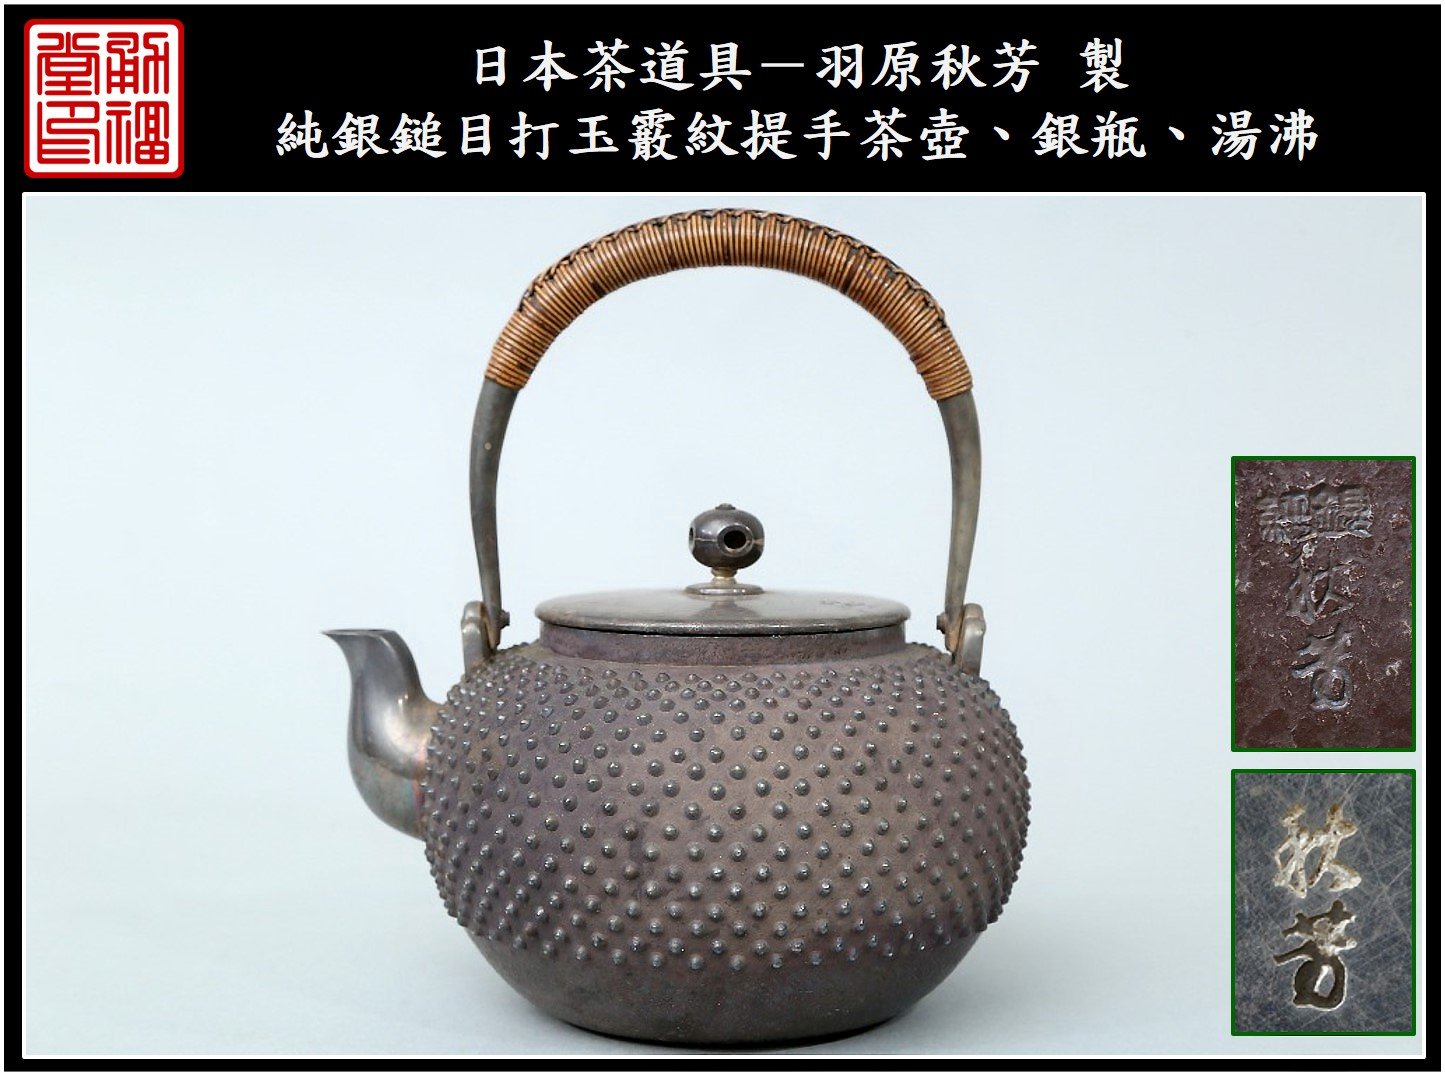 茶道具 銀瓶  湯沸 丸型 石目 銀メッキ 5合  秀峰堂 新品茶箱